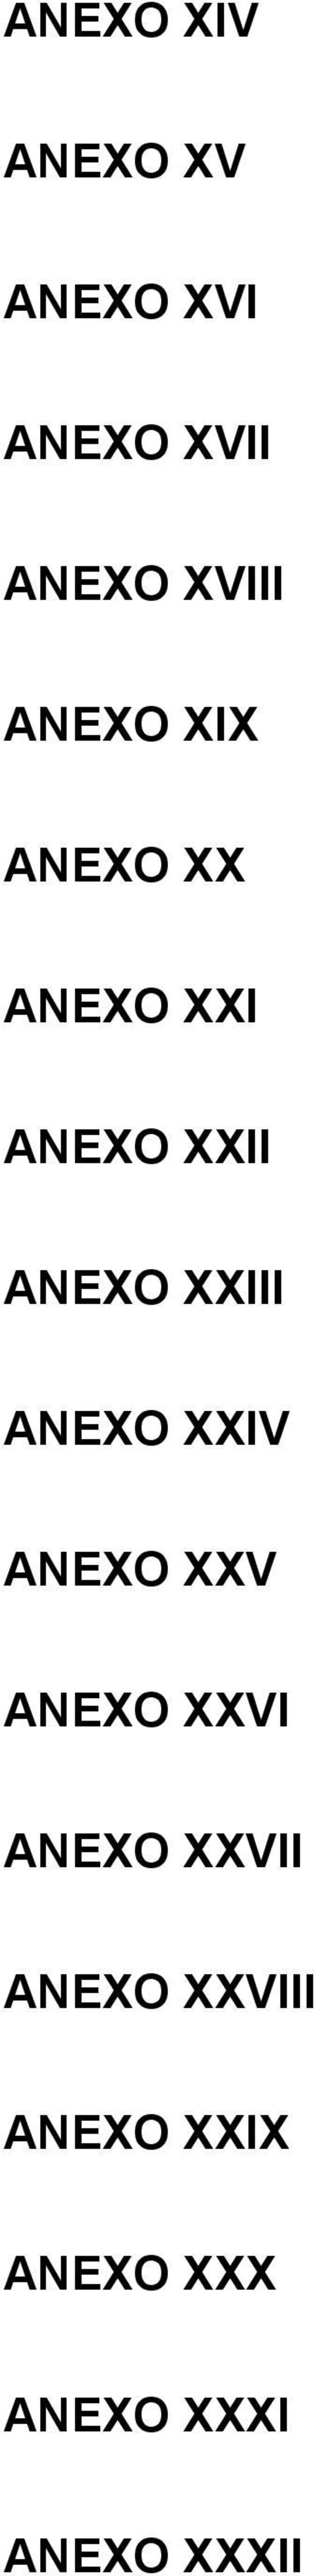 ANEXO XXIII ANEXO XXIV ANEXO XXV ANEXO XXVI ANEXO